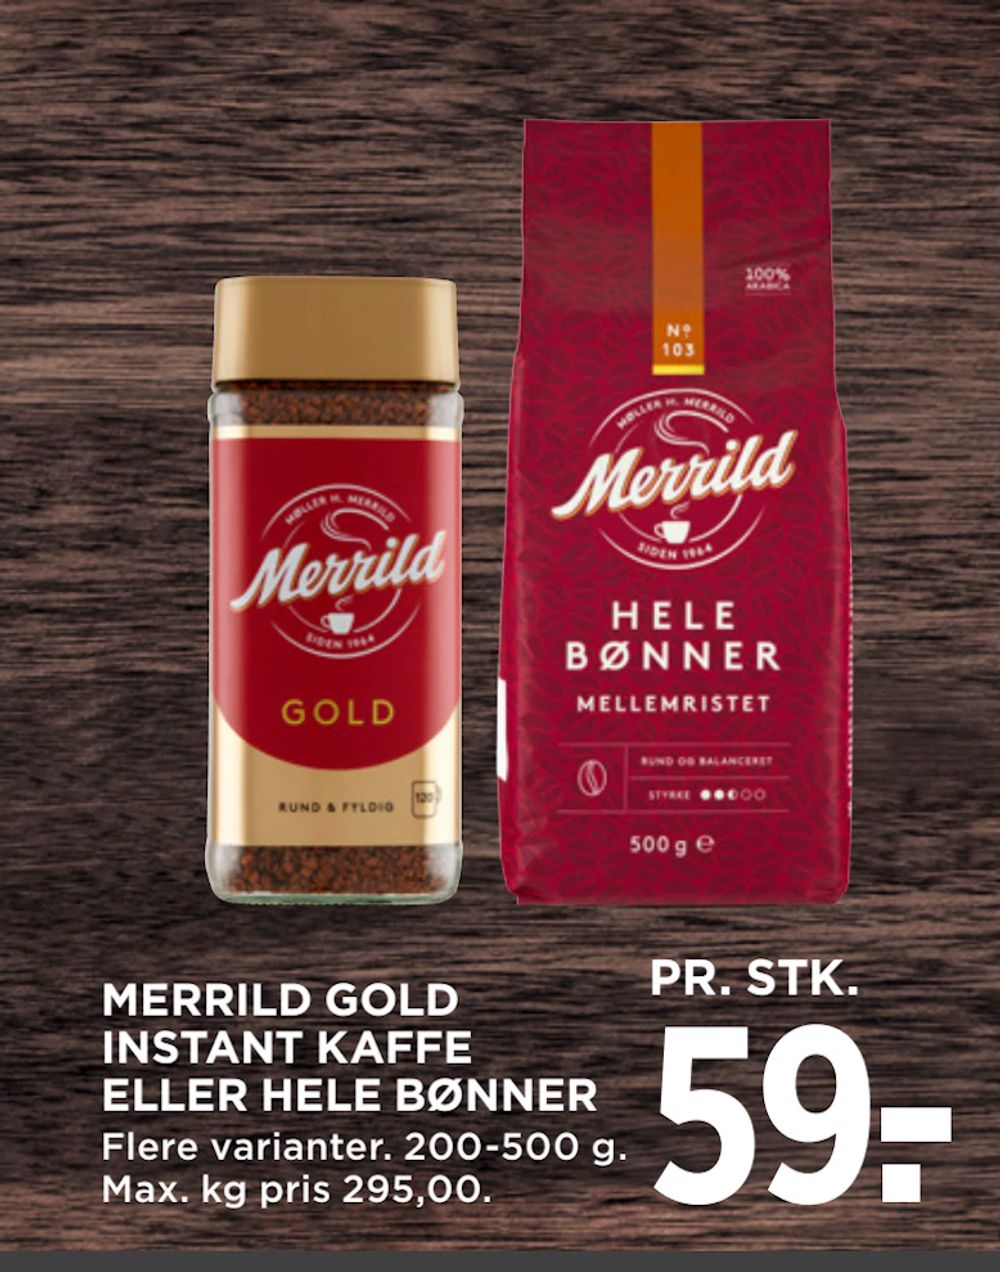 Tilbud på MERRILD GOLD INSTANT KAFFE ELLER HELE BØNNER fra MENY til 59 kr.